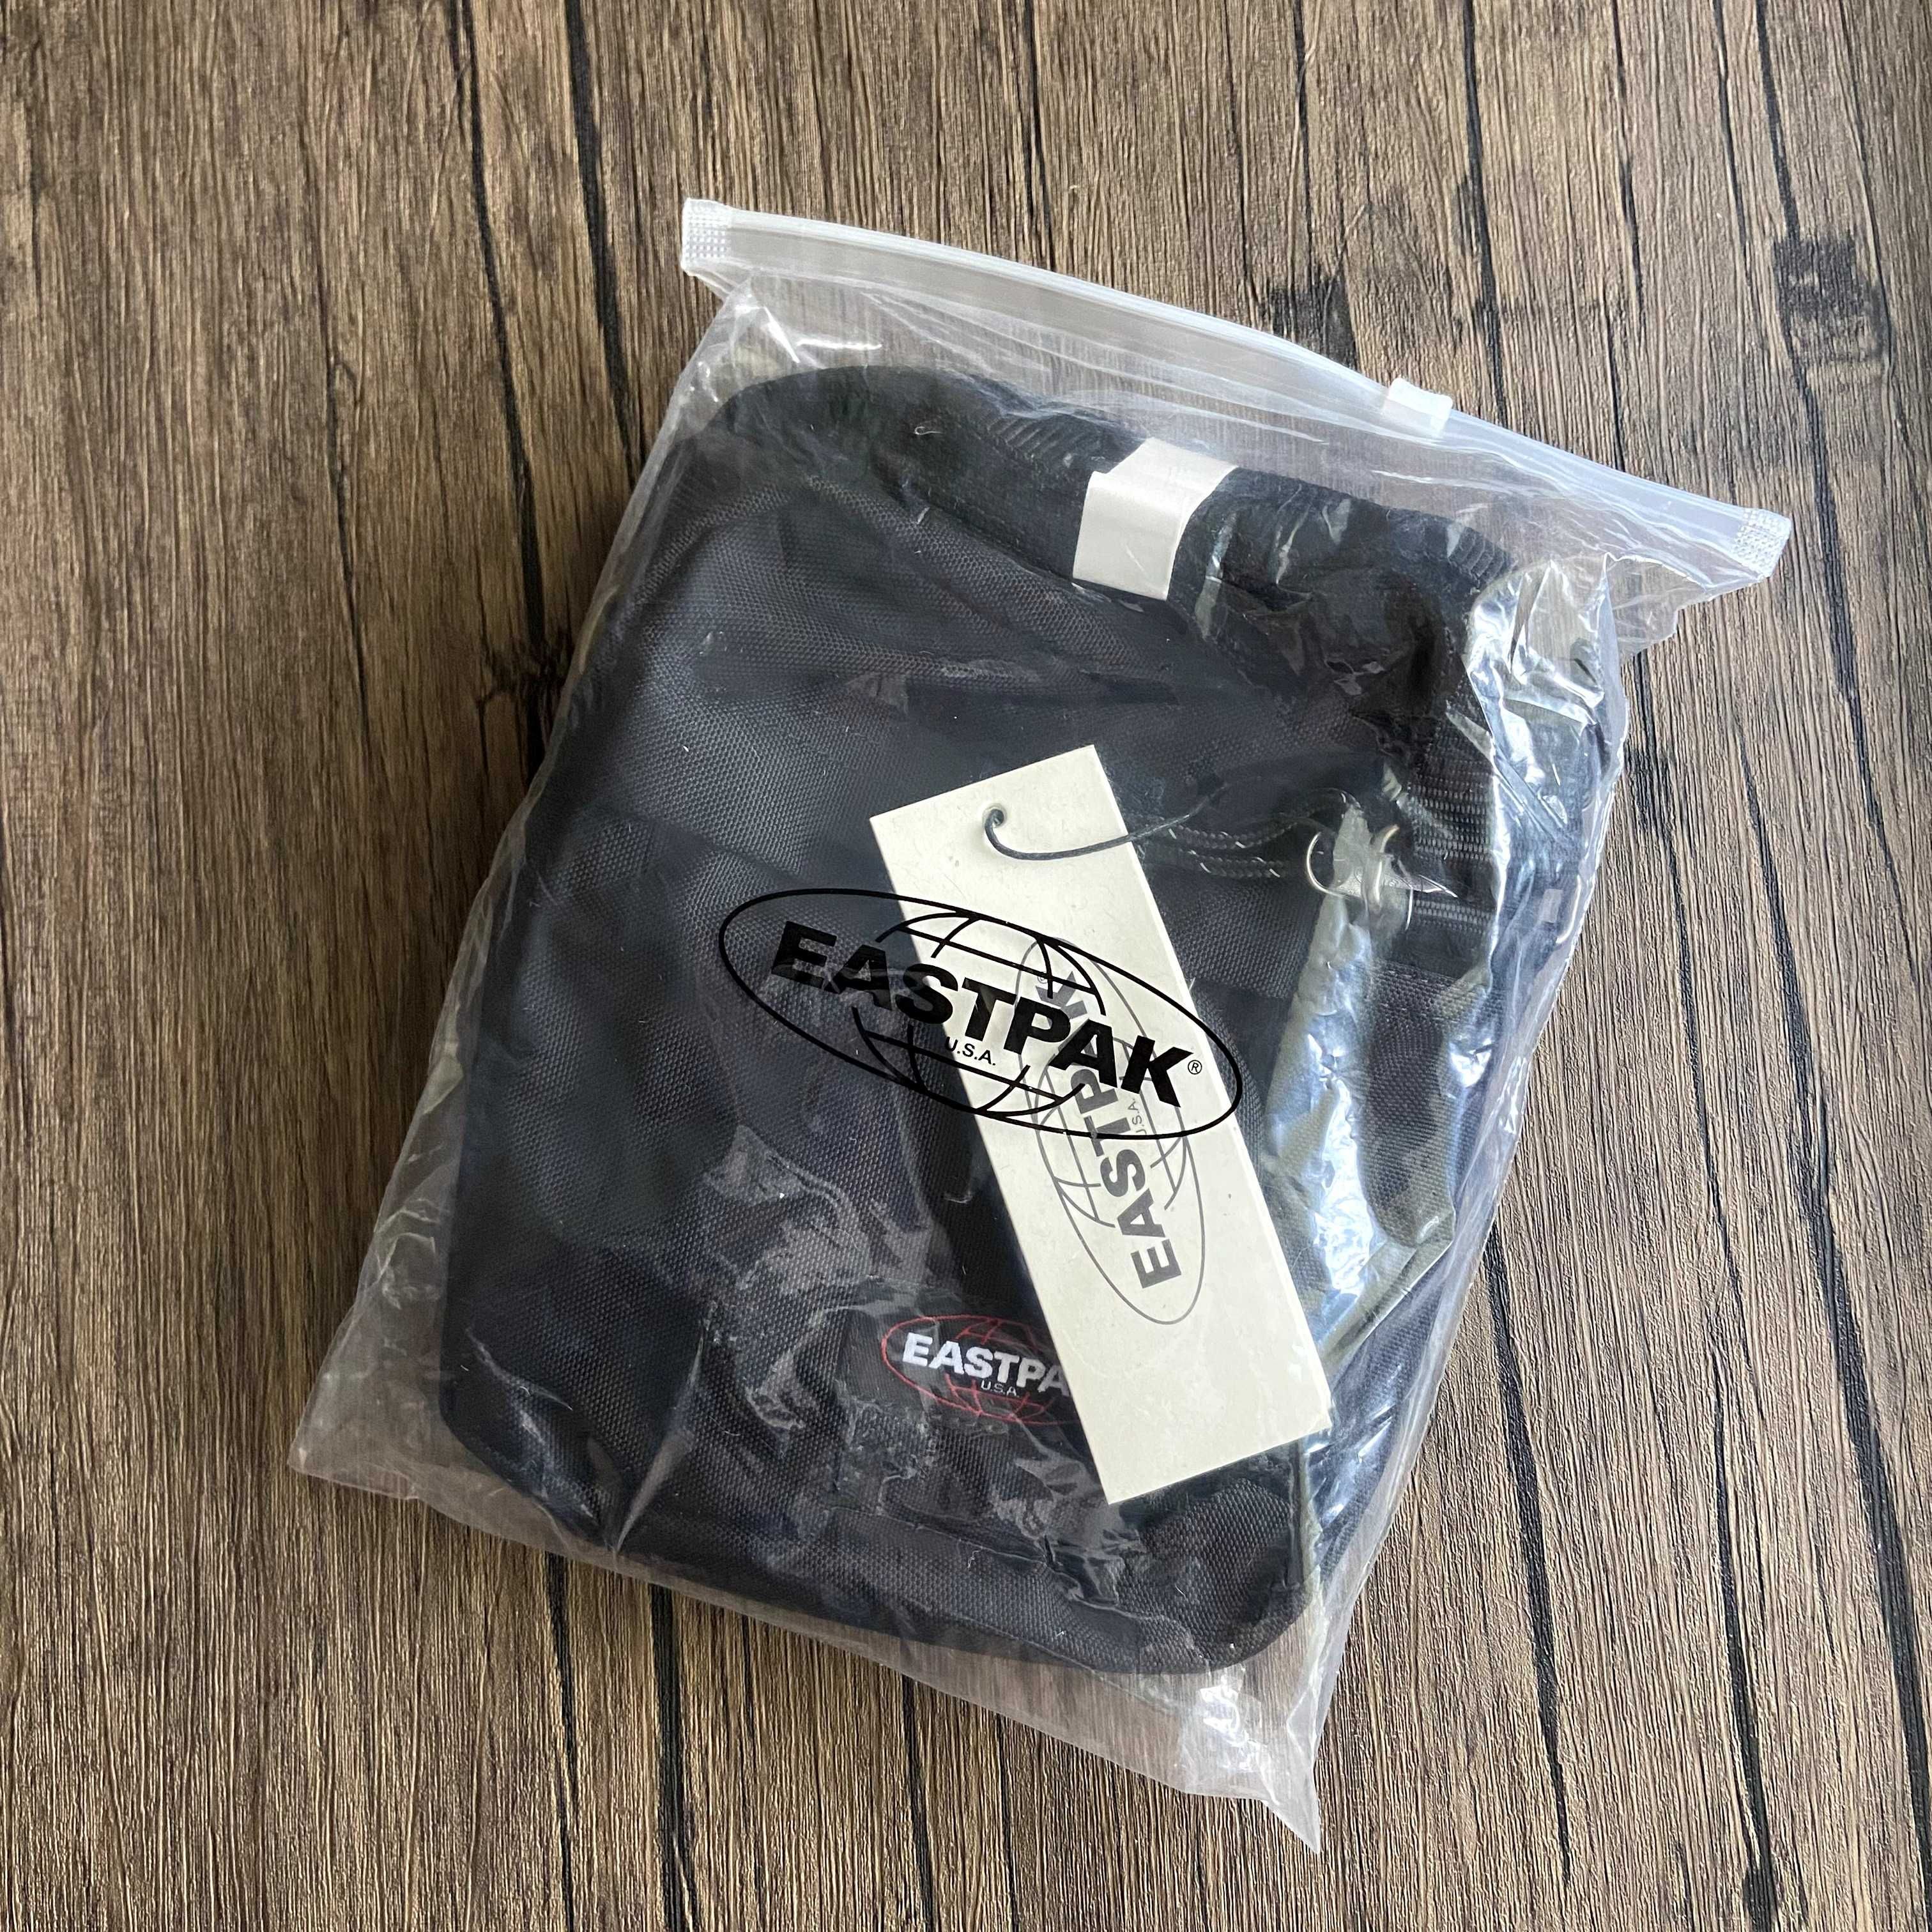 Месенджер, сумка Eastpak black - чорного кольору, оригінал.